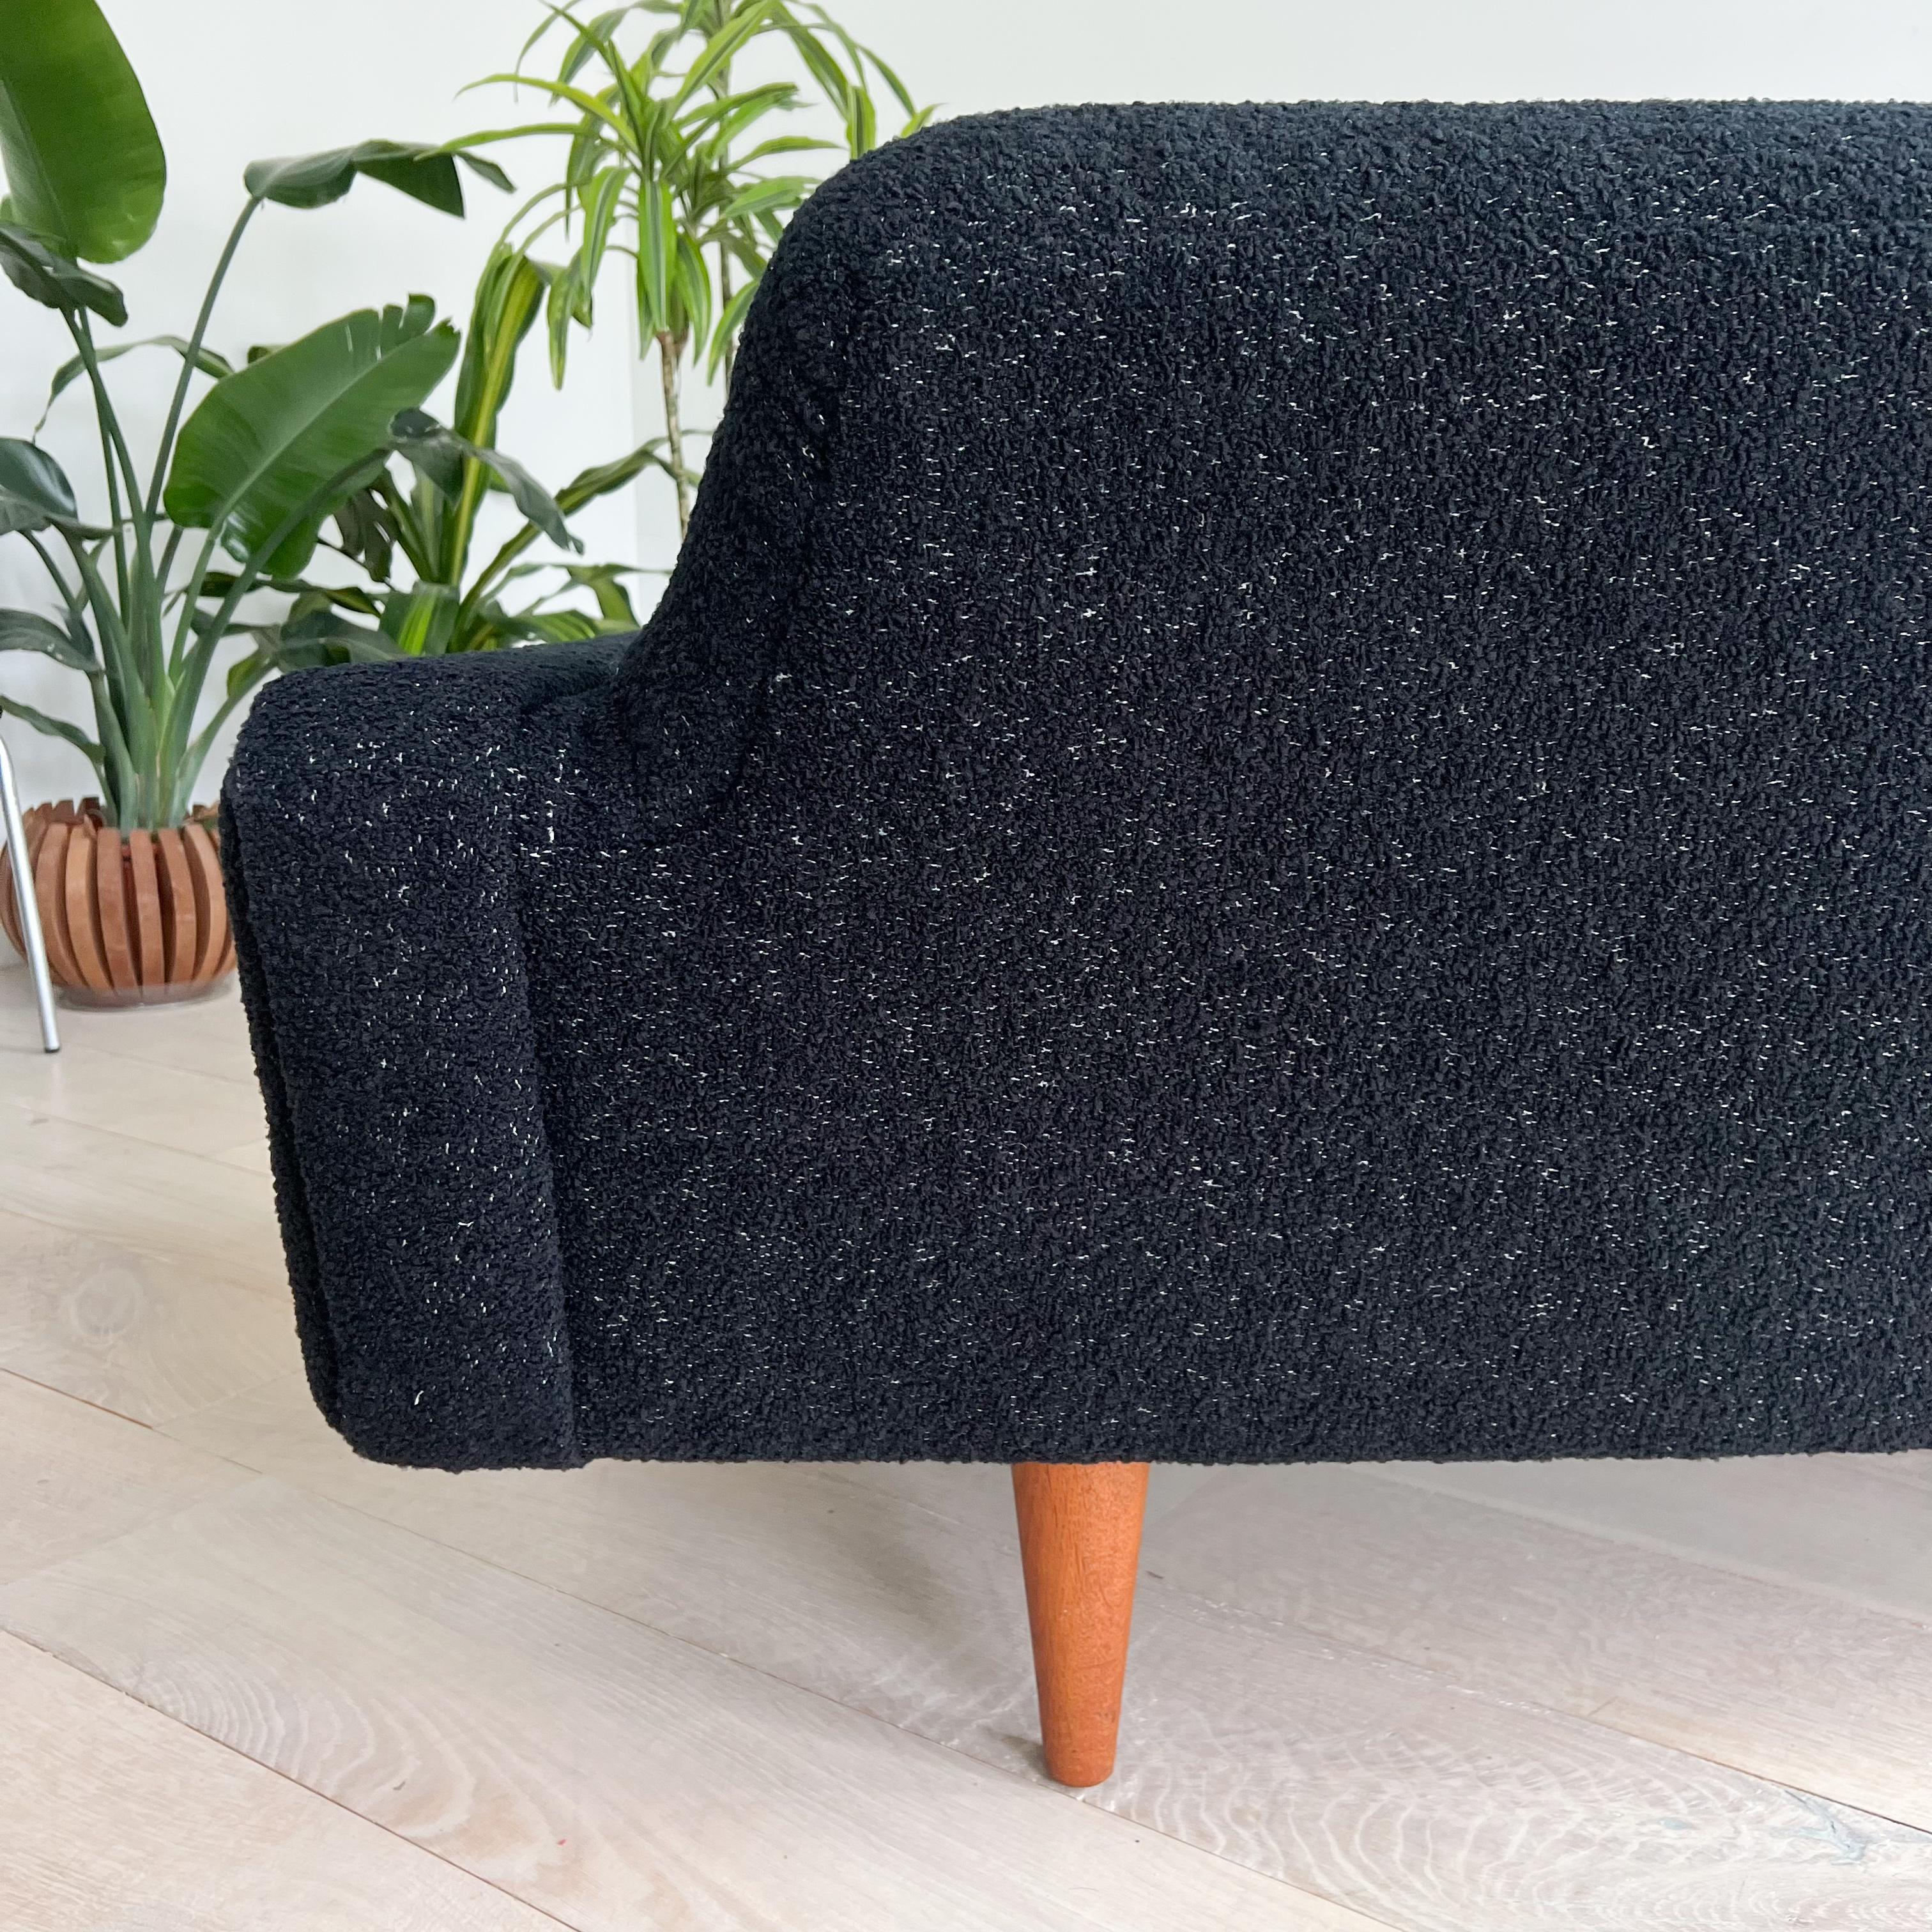 Illum Wikkelso's Rare Banana Curved Sofa - Model 450 - New Upholstery 14